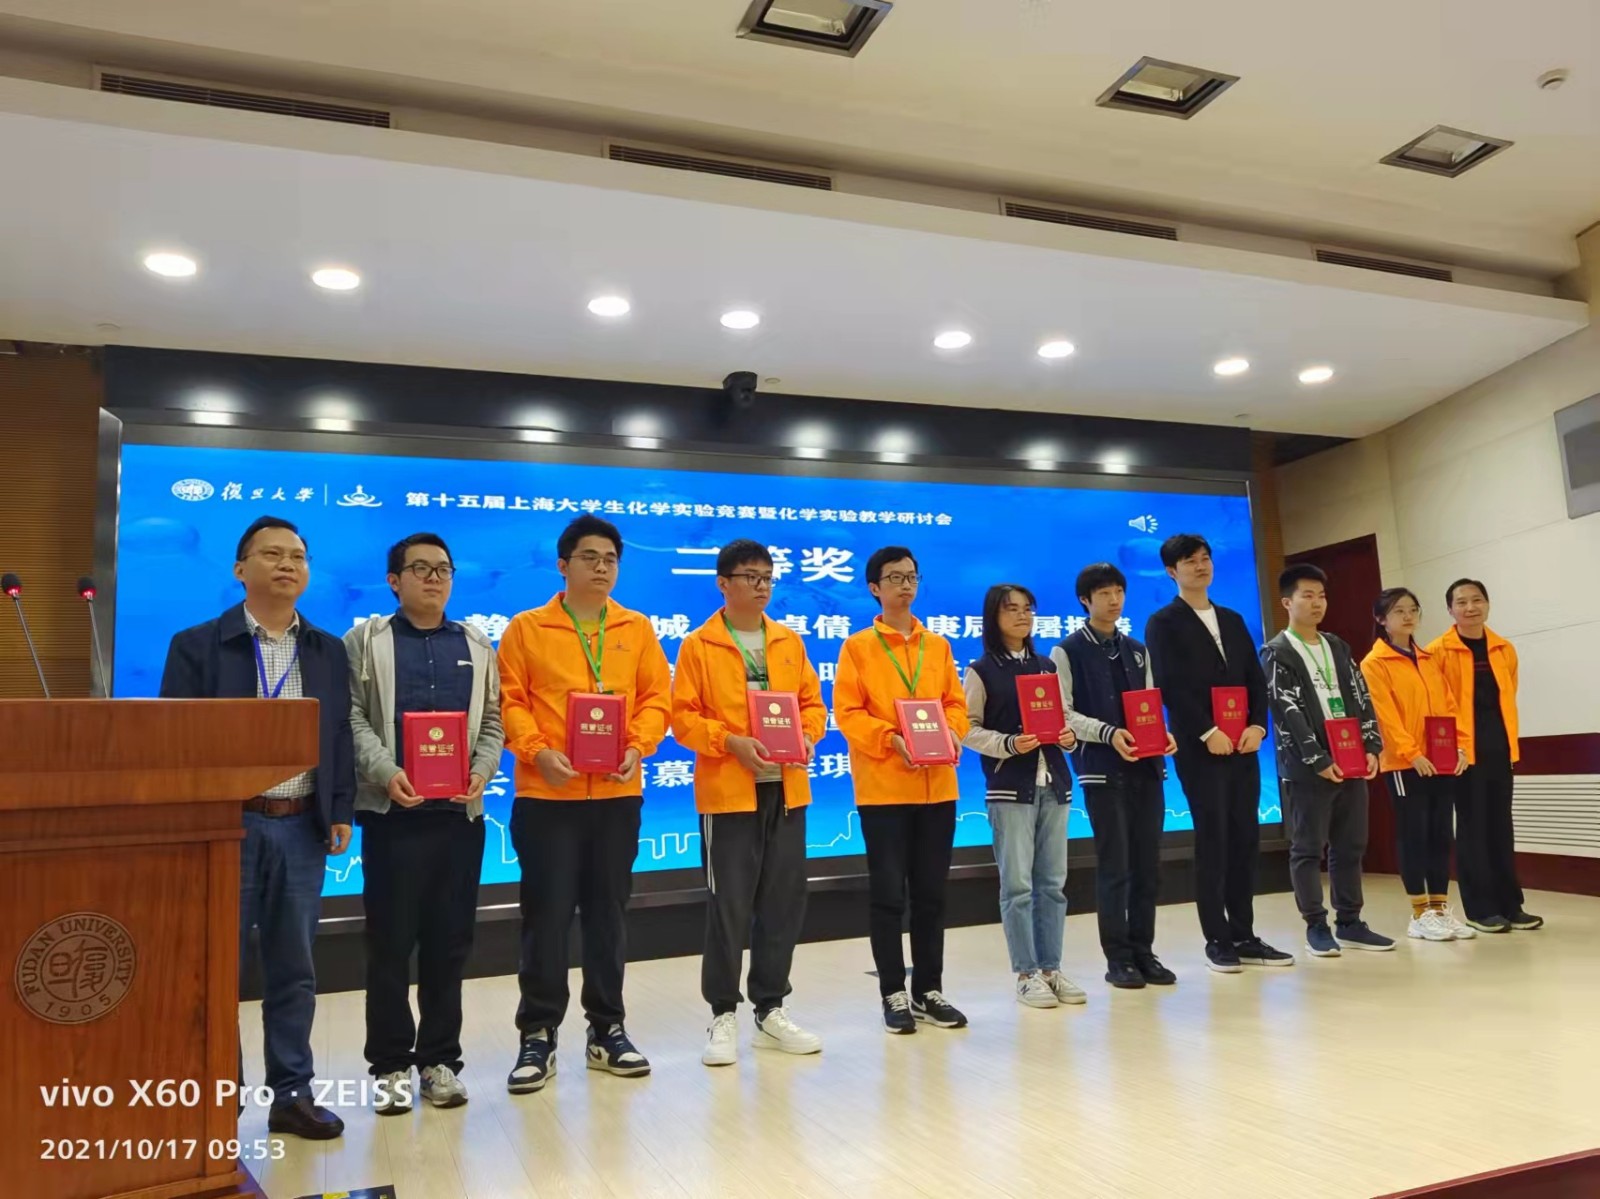 第十五届上海大学生化学实验竞赛暨化学实验教学研讨会